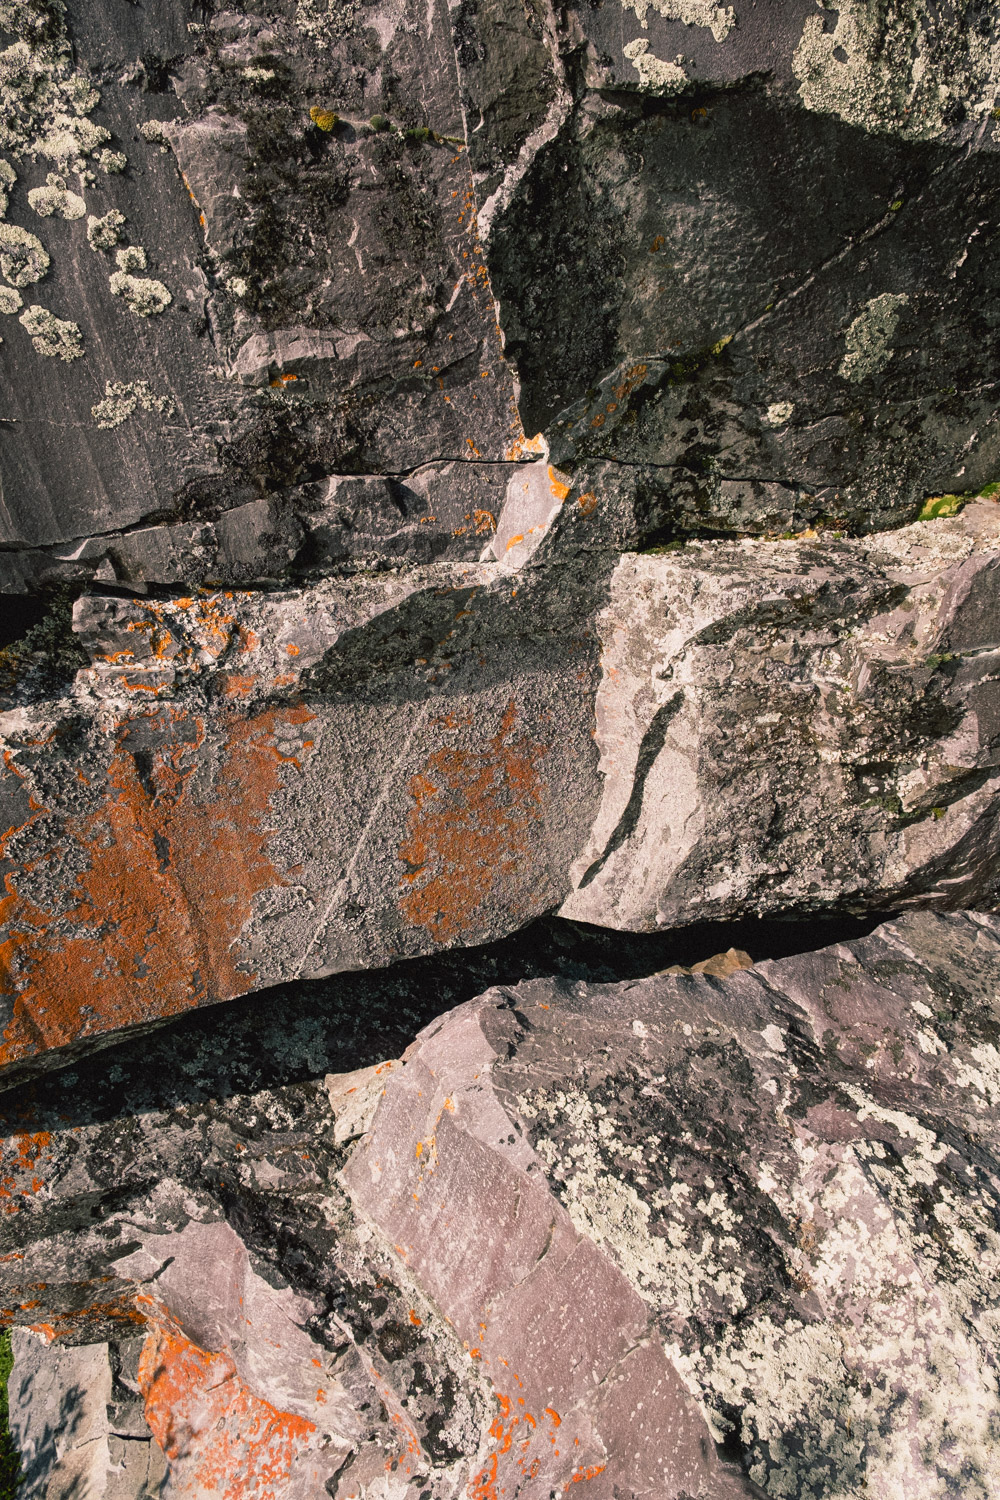 Image de la roche croisée lors du trek au Sarek.